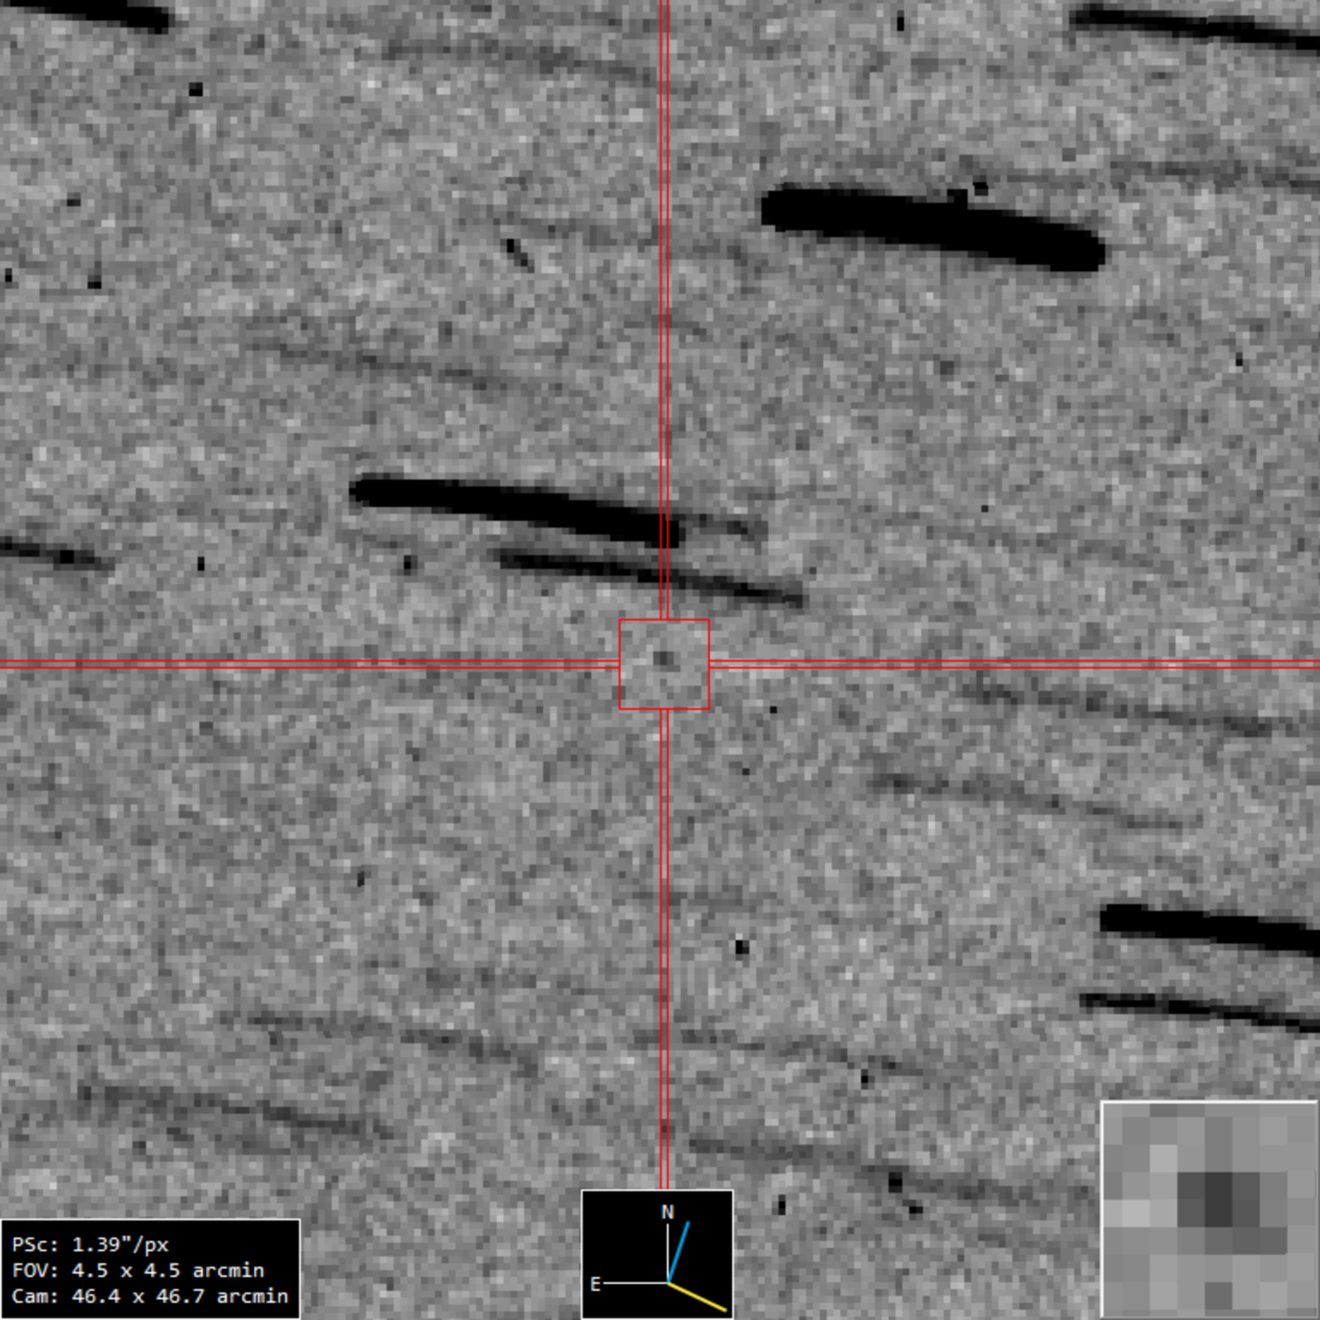 Zondag 24 september dropt OSIRIS-REx de monsters van planetoïde Bennu op aarde